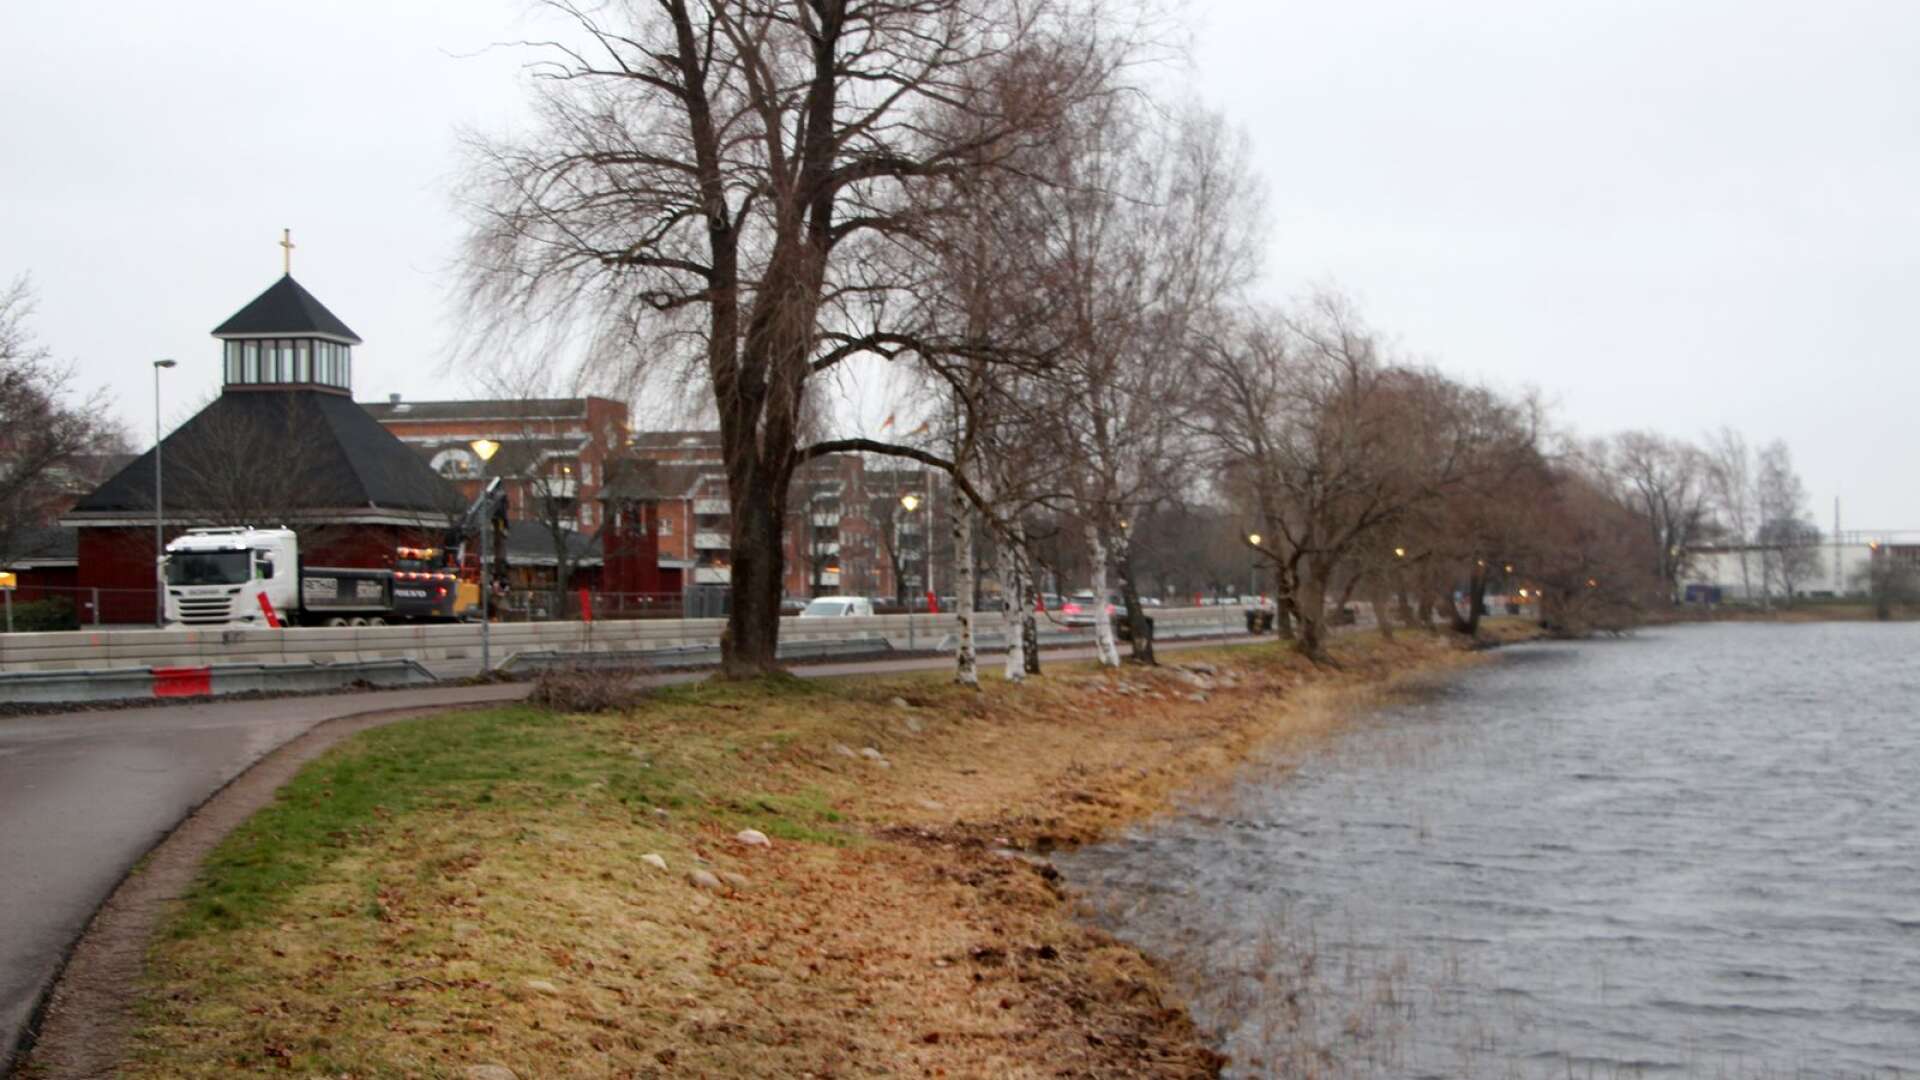 I dag byggs Sjömansgatan i Viken om. Kommunen passar även på att skapa ett grönare stråk mellan Mariebergsskogen och Stadsträdgården genom att anlägga ett nytt parkområde längs stranden.